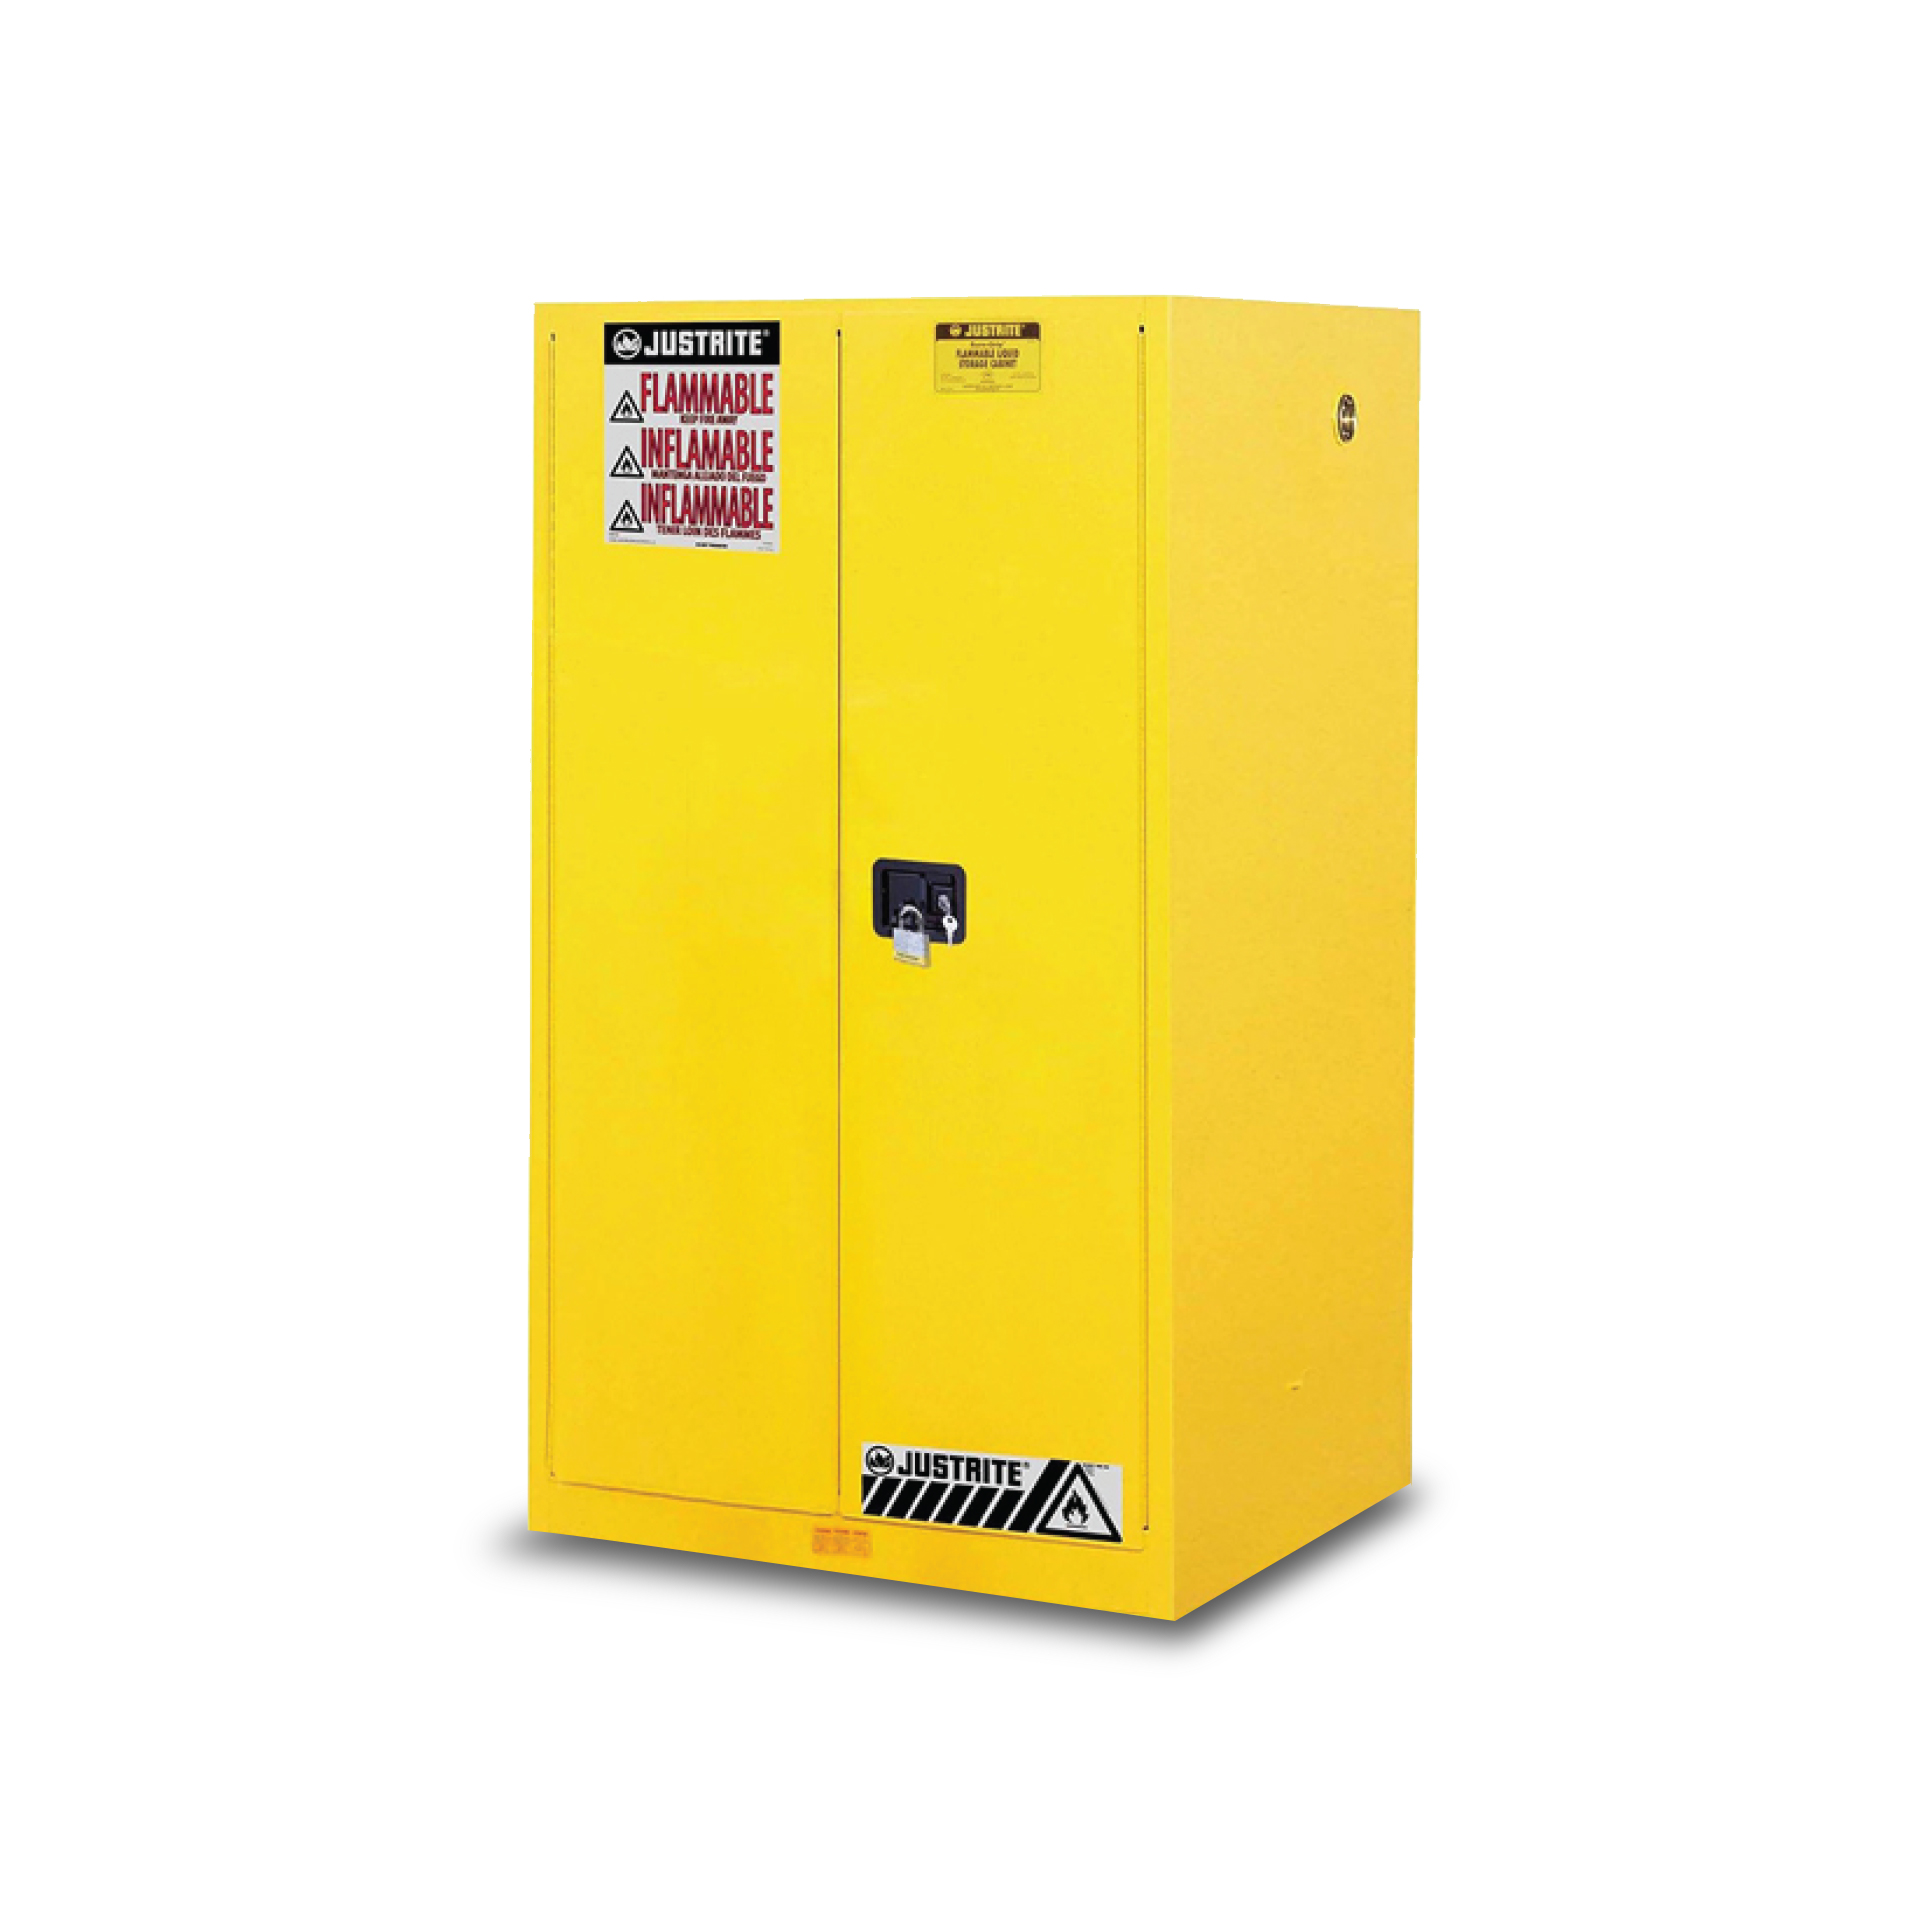 ตู้เก็บสารเคมี สำหรับจัดเก็บผลิตภัณฑ์ที่ติดไฟได้ง่าย FLAMMABLE SAFETY CABINET